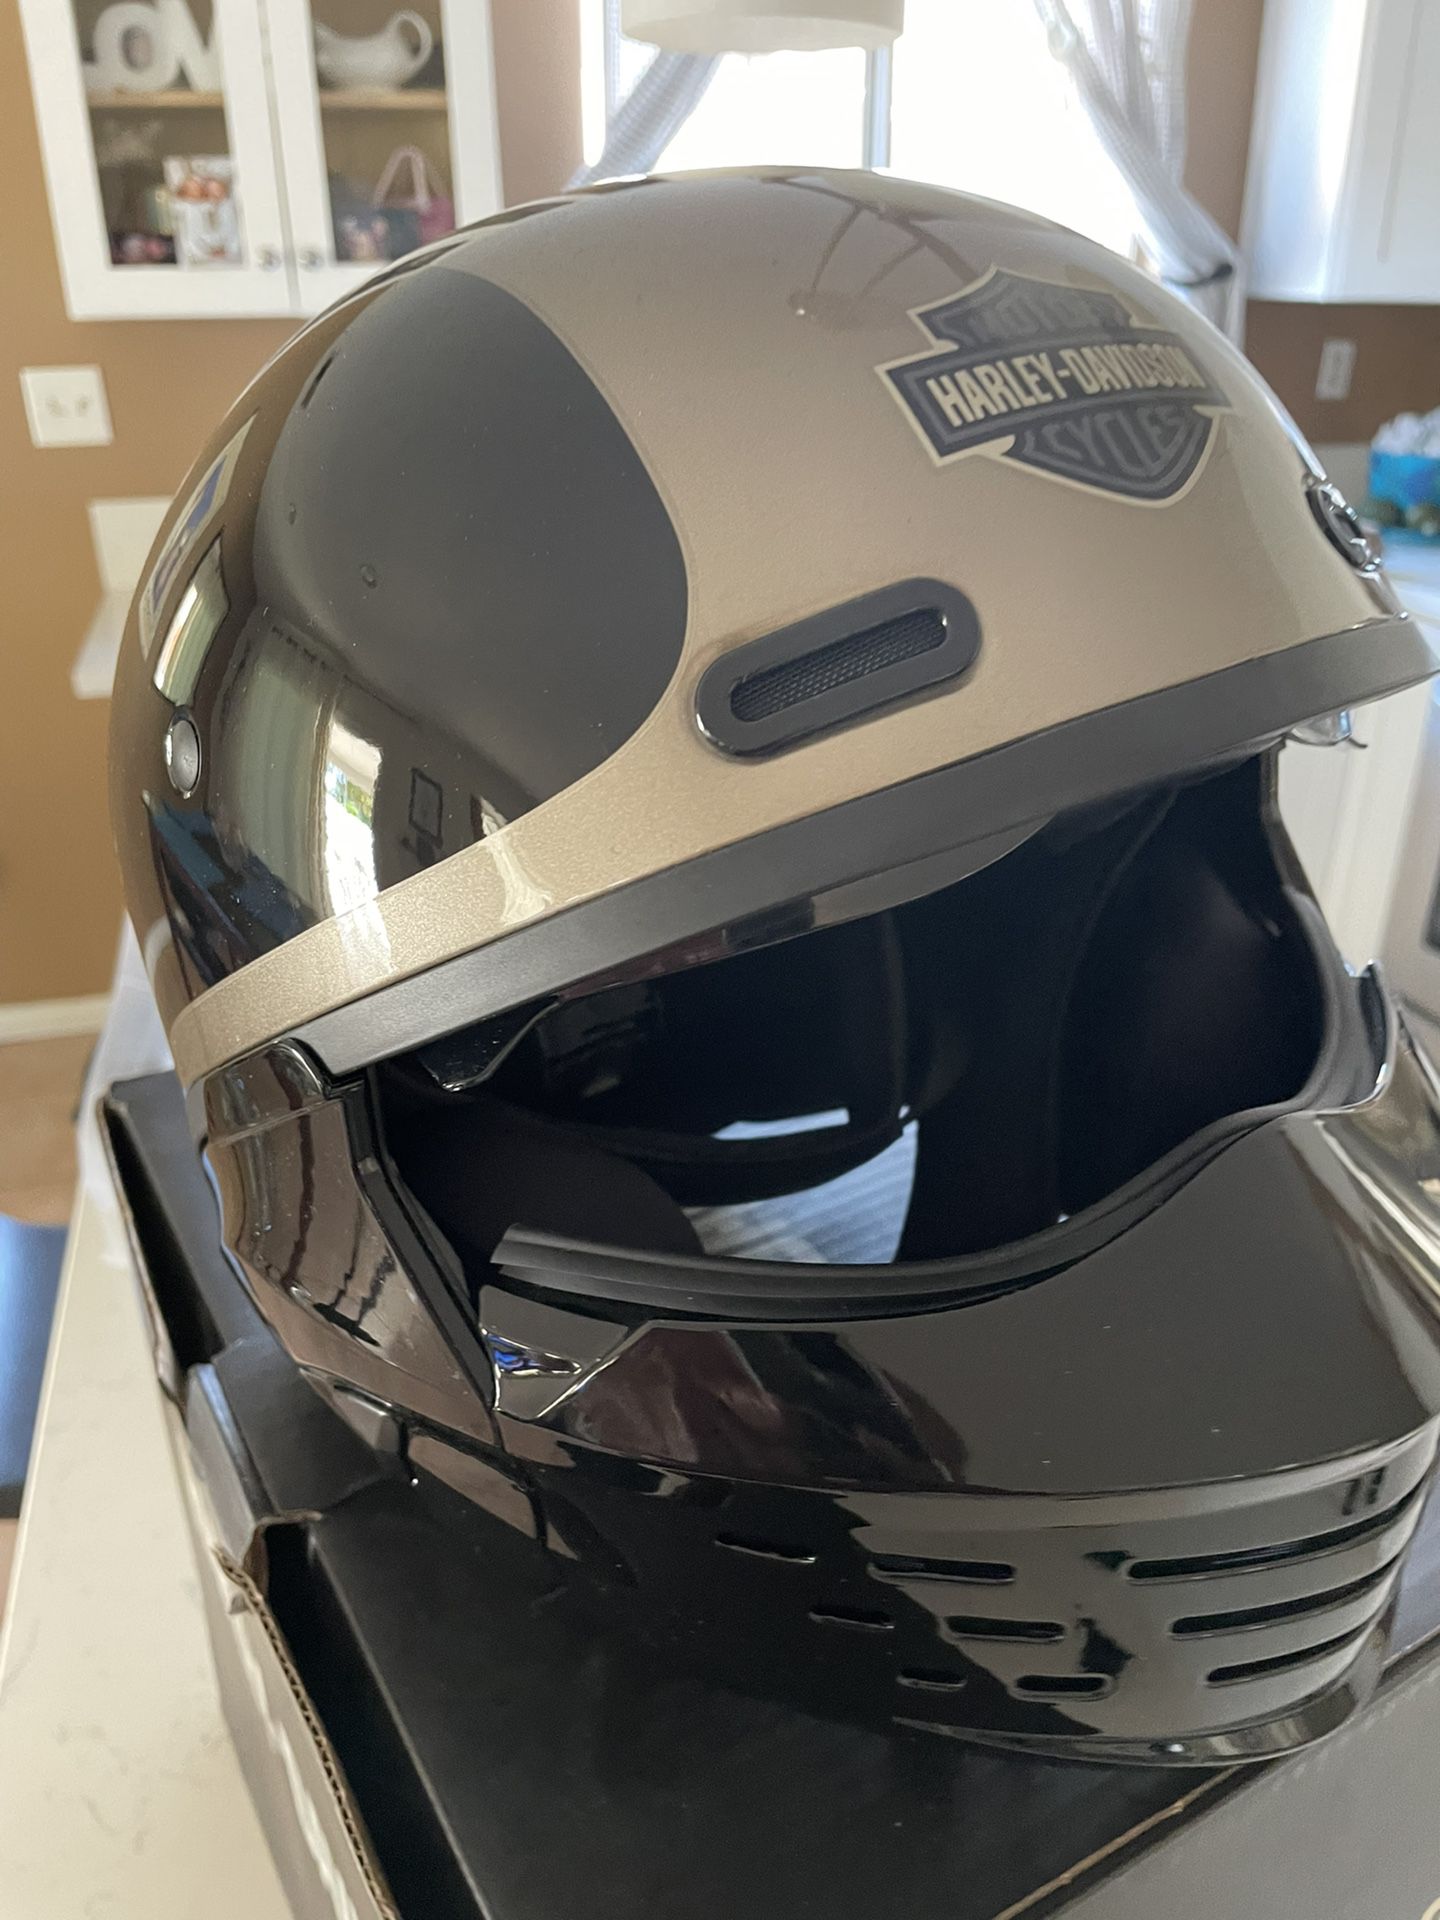 Harley Davidson Helmet Bought For 300.00 Brand New